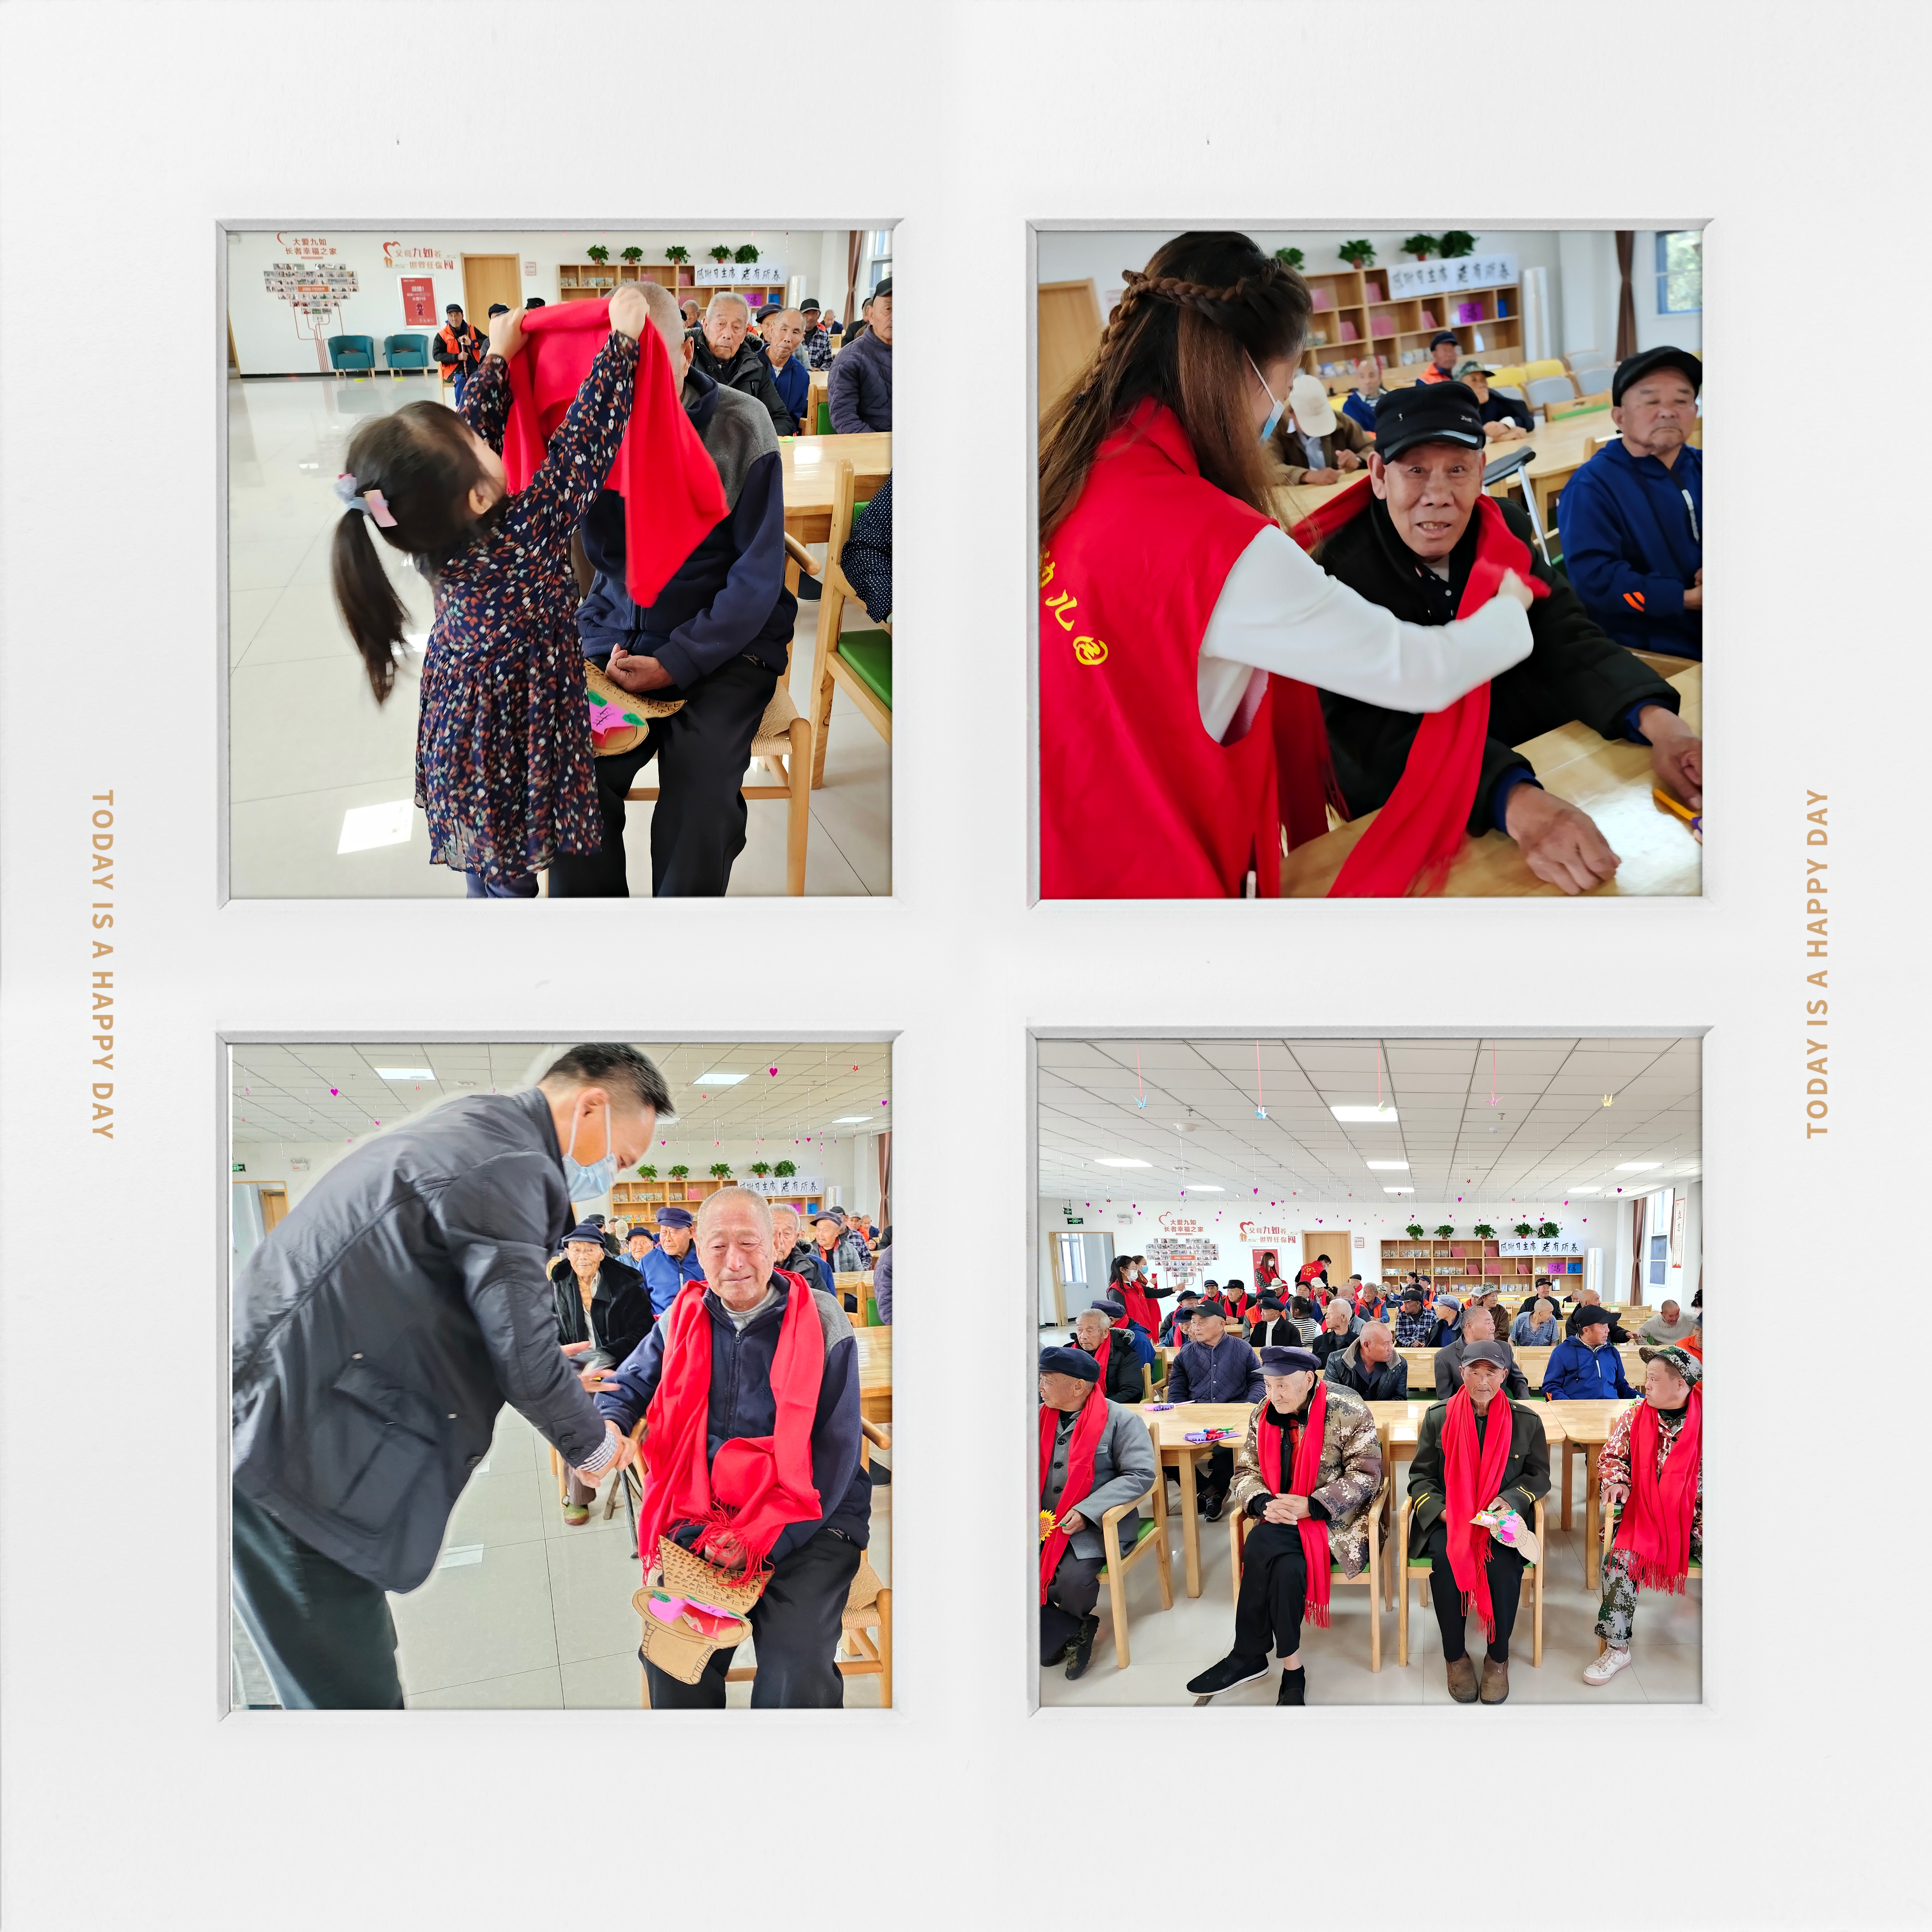 相约重阳节，情暖老人心  ——瓦窑镇中心幼儿园重阳送温暖节日活动